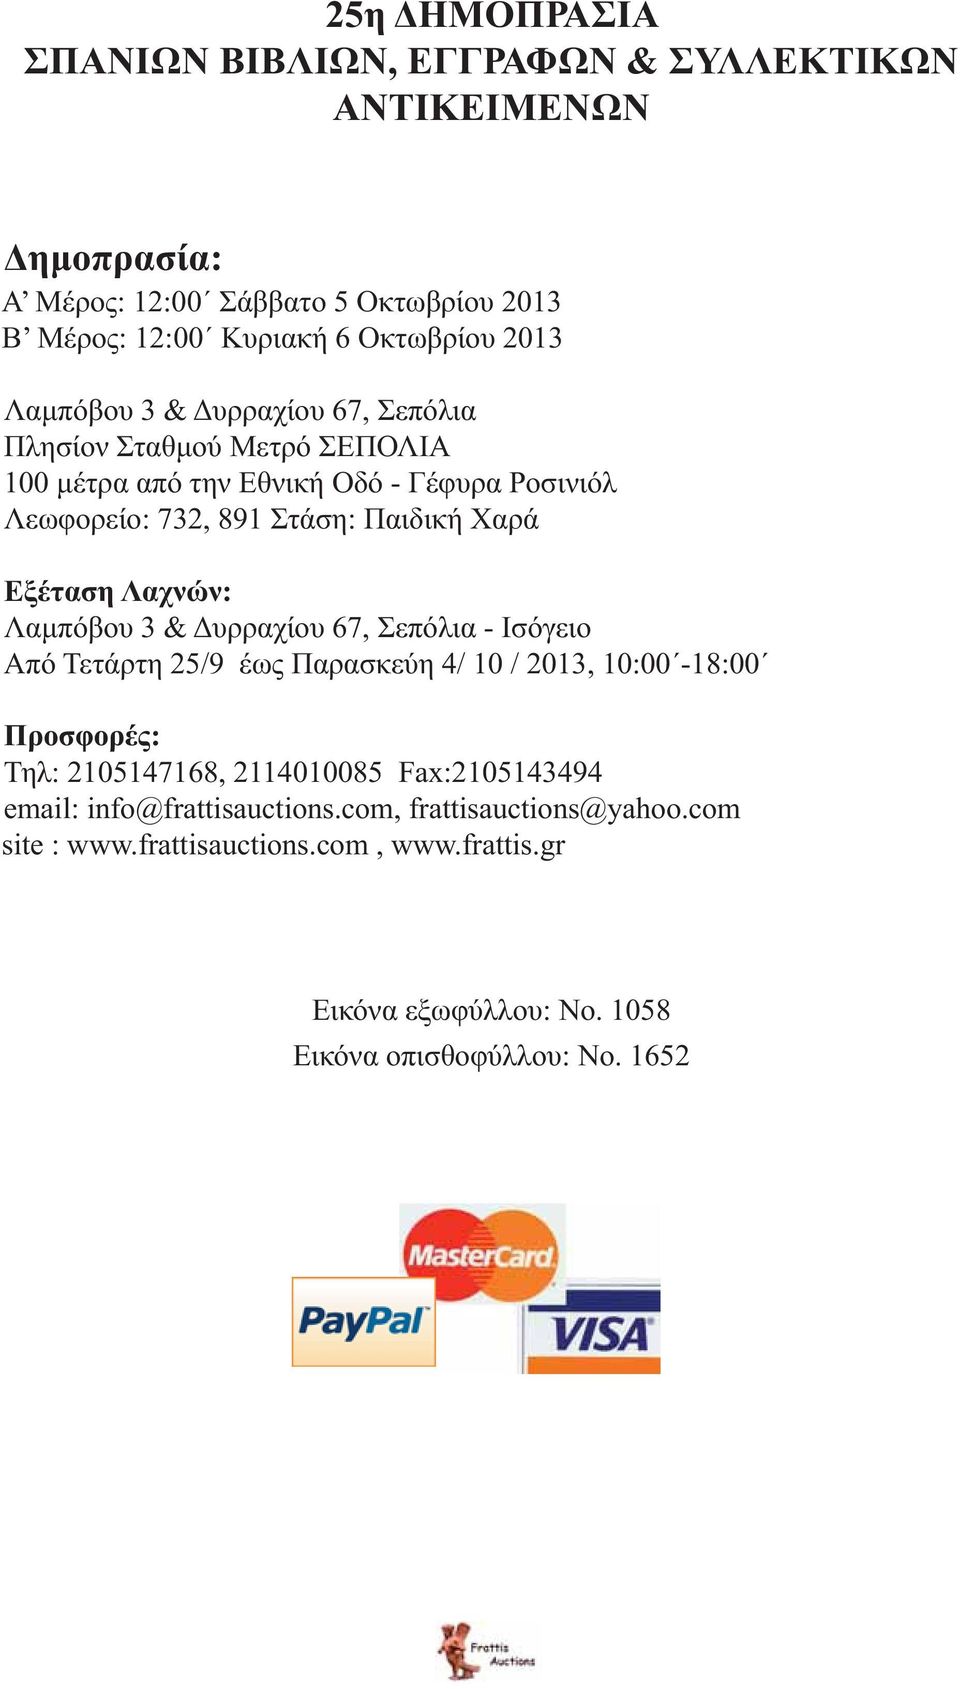 Λαχνών: Λαμπόβου 3 & Δυρραχίου 67, Σεπόλια - Ισόγειο Από Τετάρτη 25/9 έως Παρασκεύη 4/ 10 / 2013, 10:00-18:00 Προσφορές: Τηλ: 2105147168, 2114010085